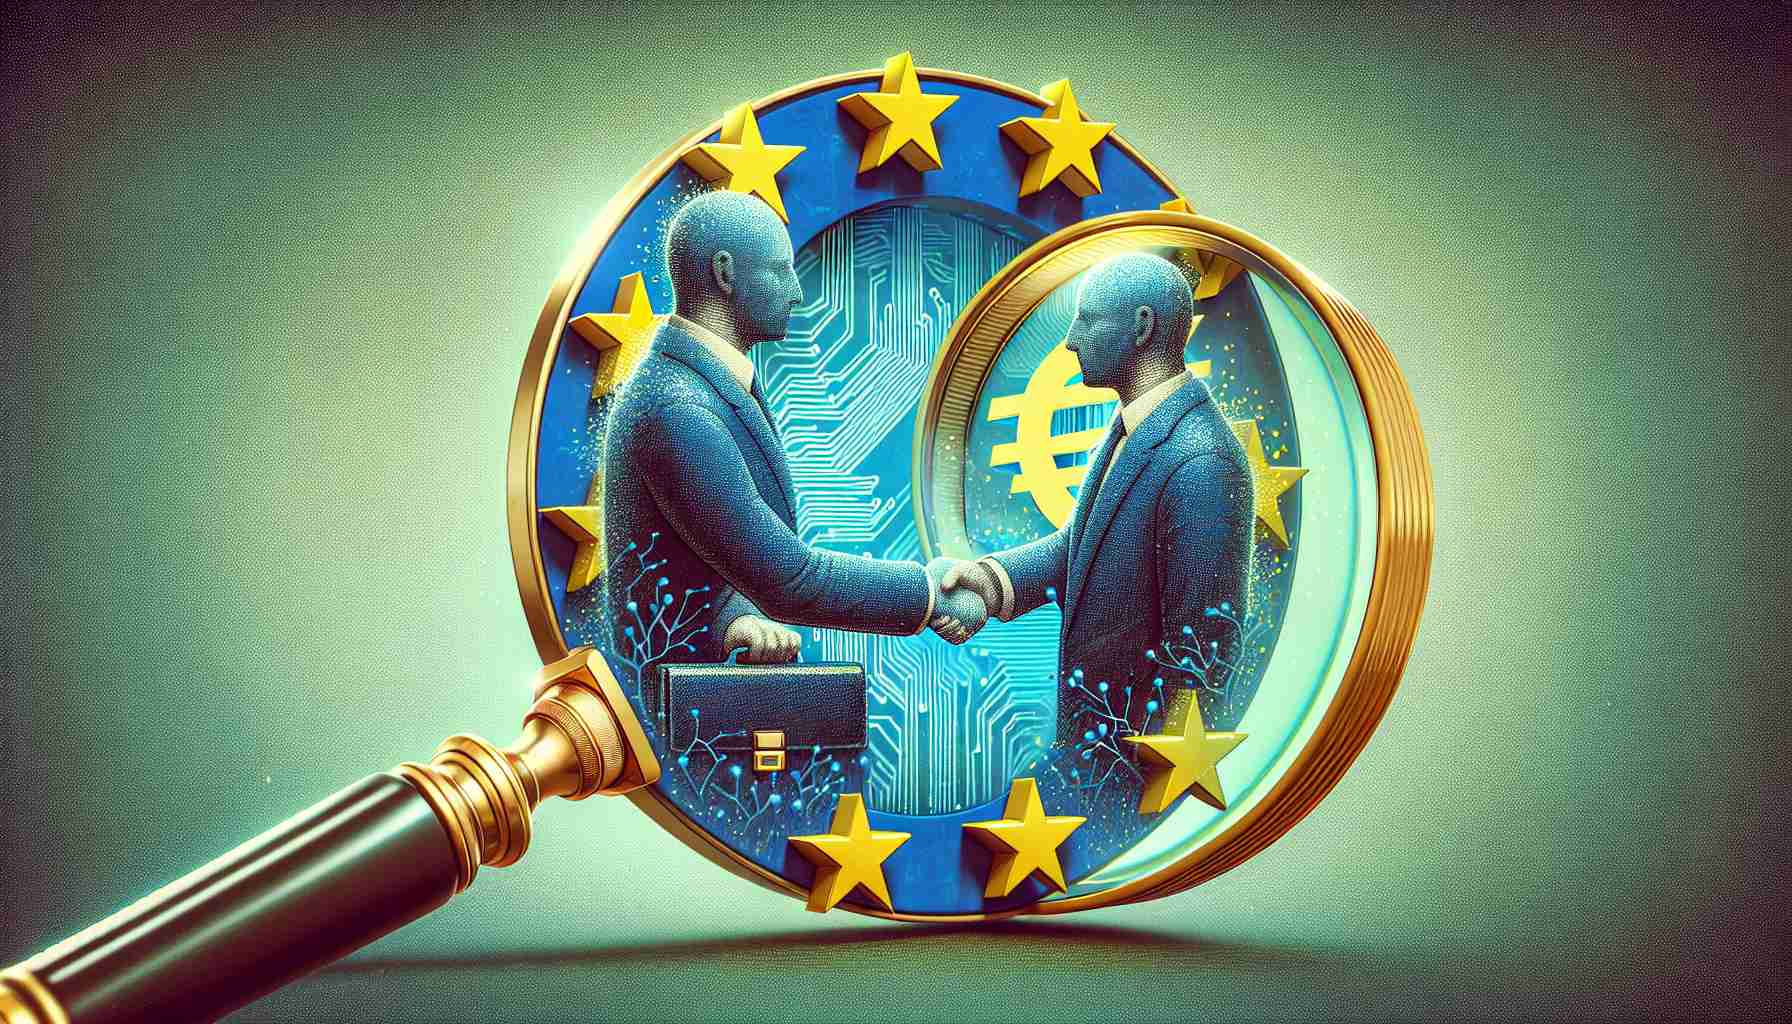 Microsoft’s Investment in Open AI Evades EU Antitrust Scrutiny